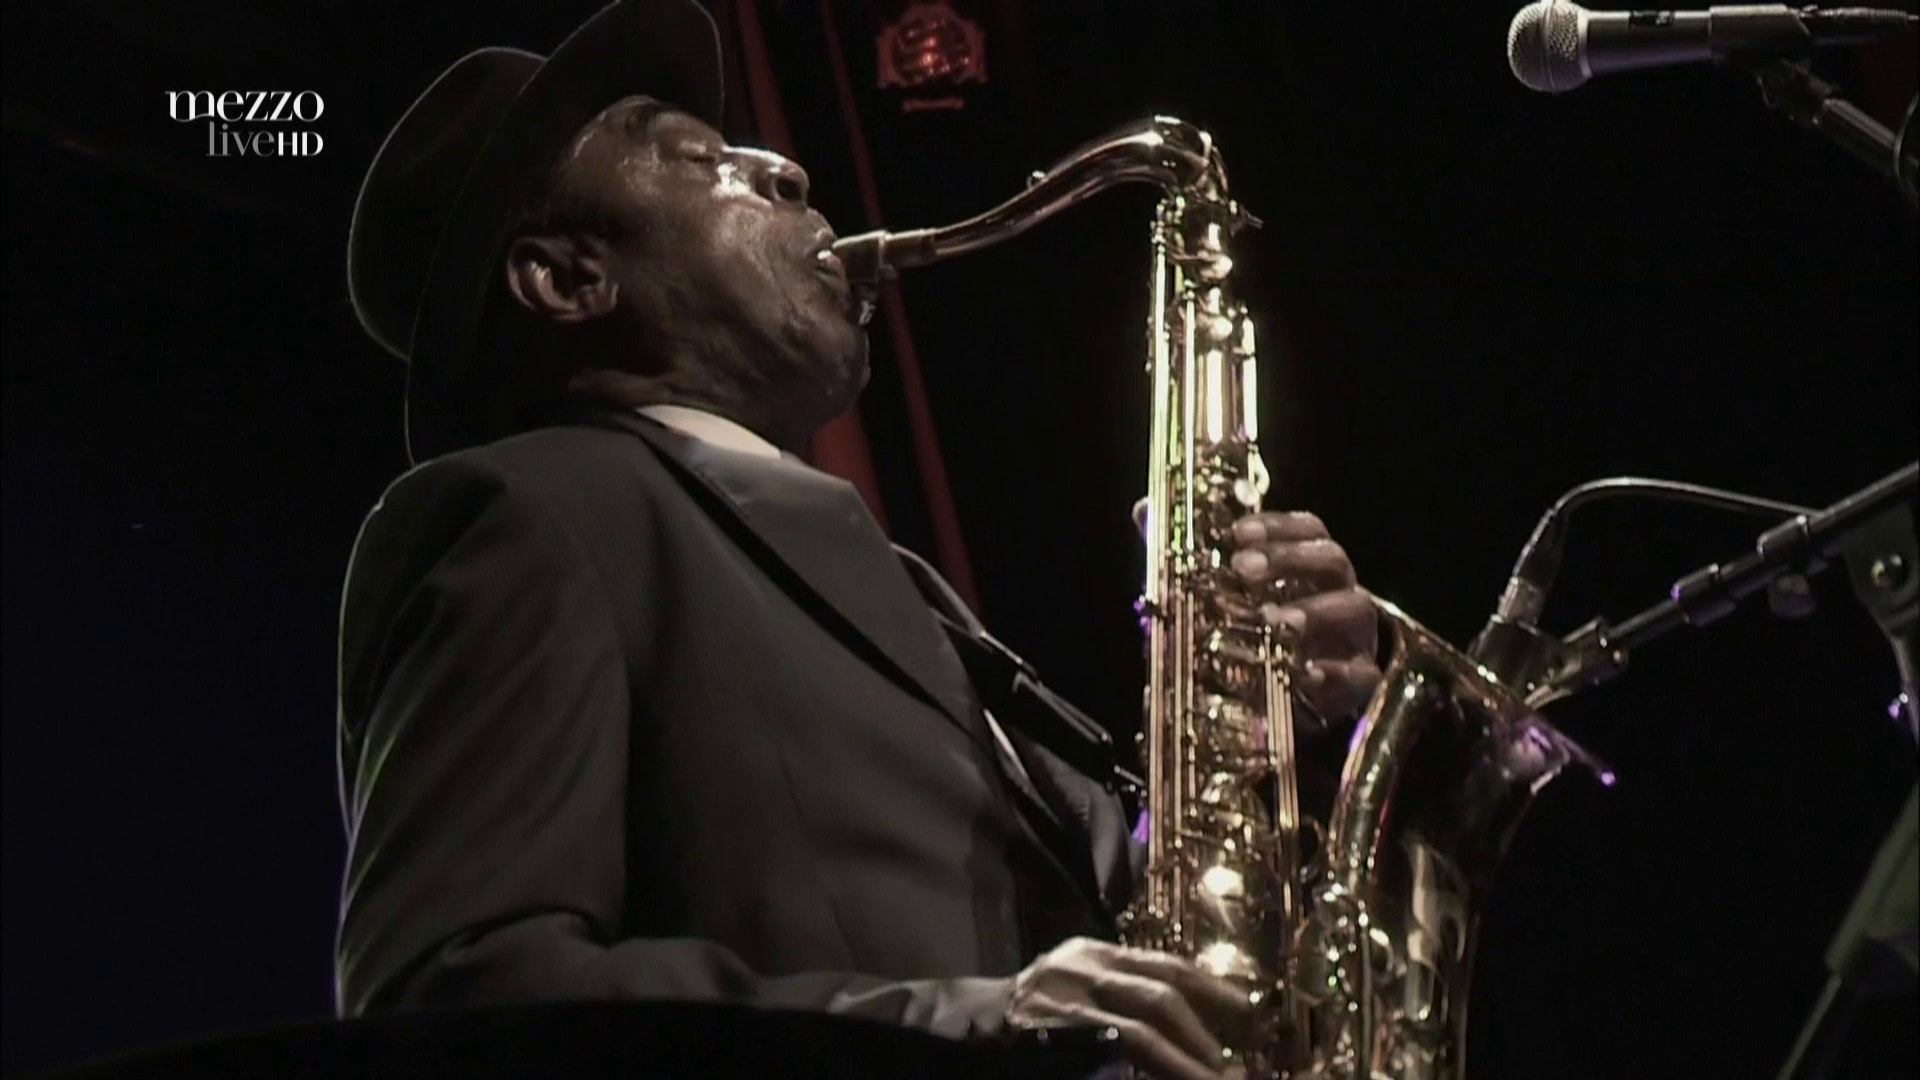 2011 Archie Shepp & Joachim Kuhn - Live at Jazzdor Festival [HDTV 1080p] 4